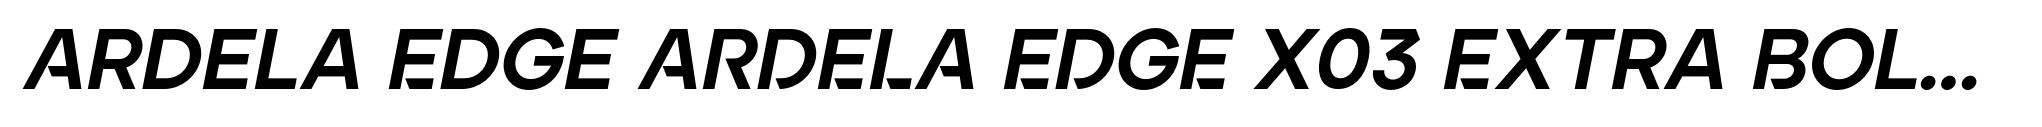 Ardela Edge ARDELA EDGE X03 Extra Bold Italic image